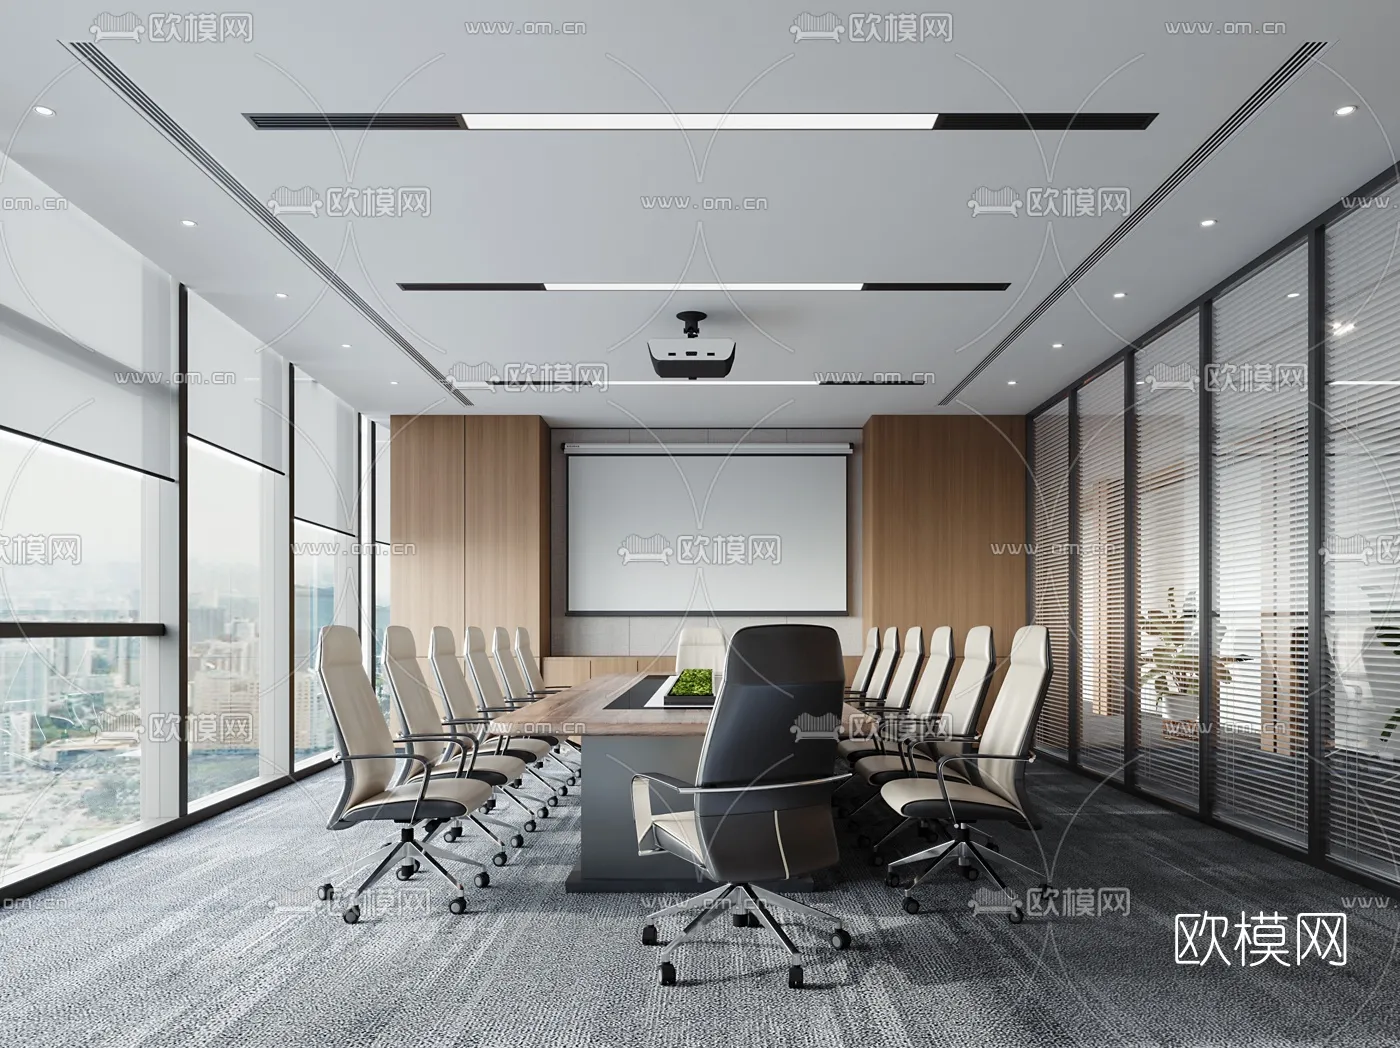 Meeting Room 3D Scenes – 1457